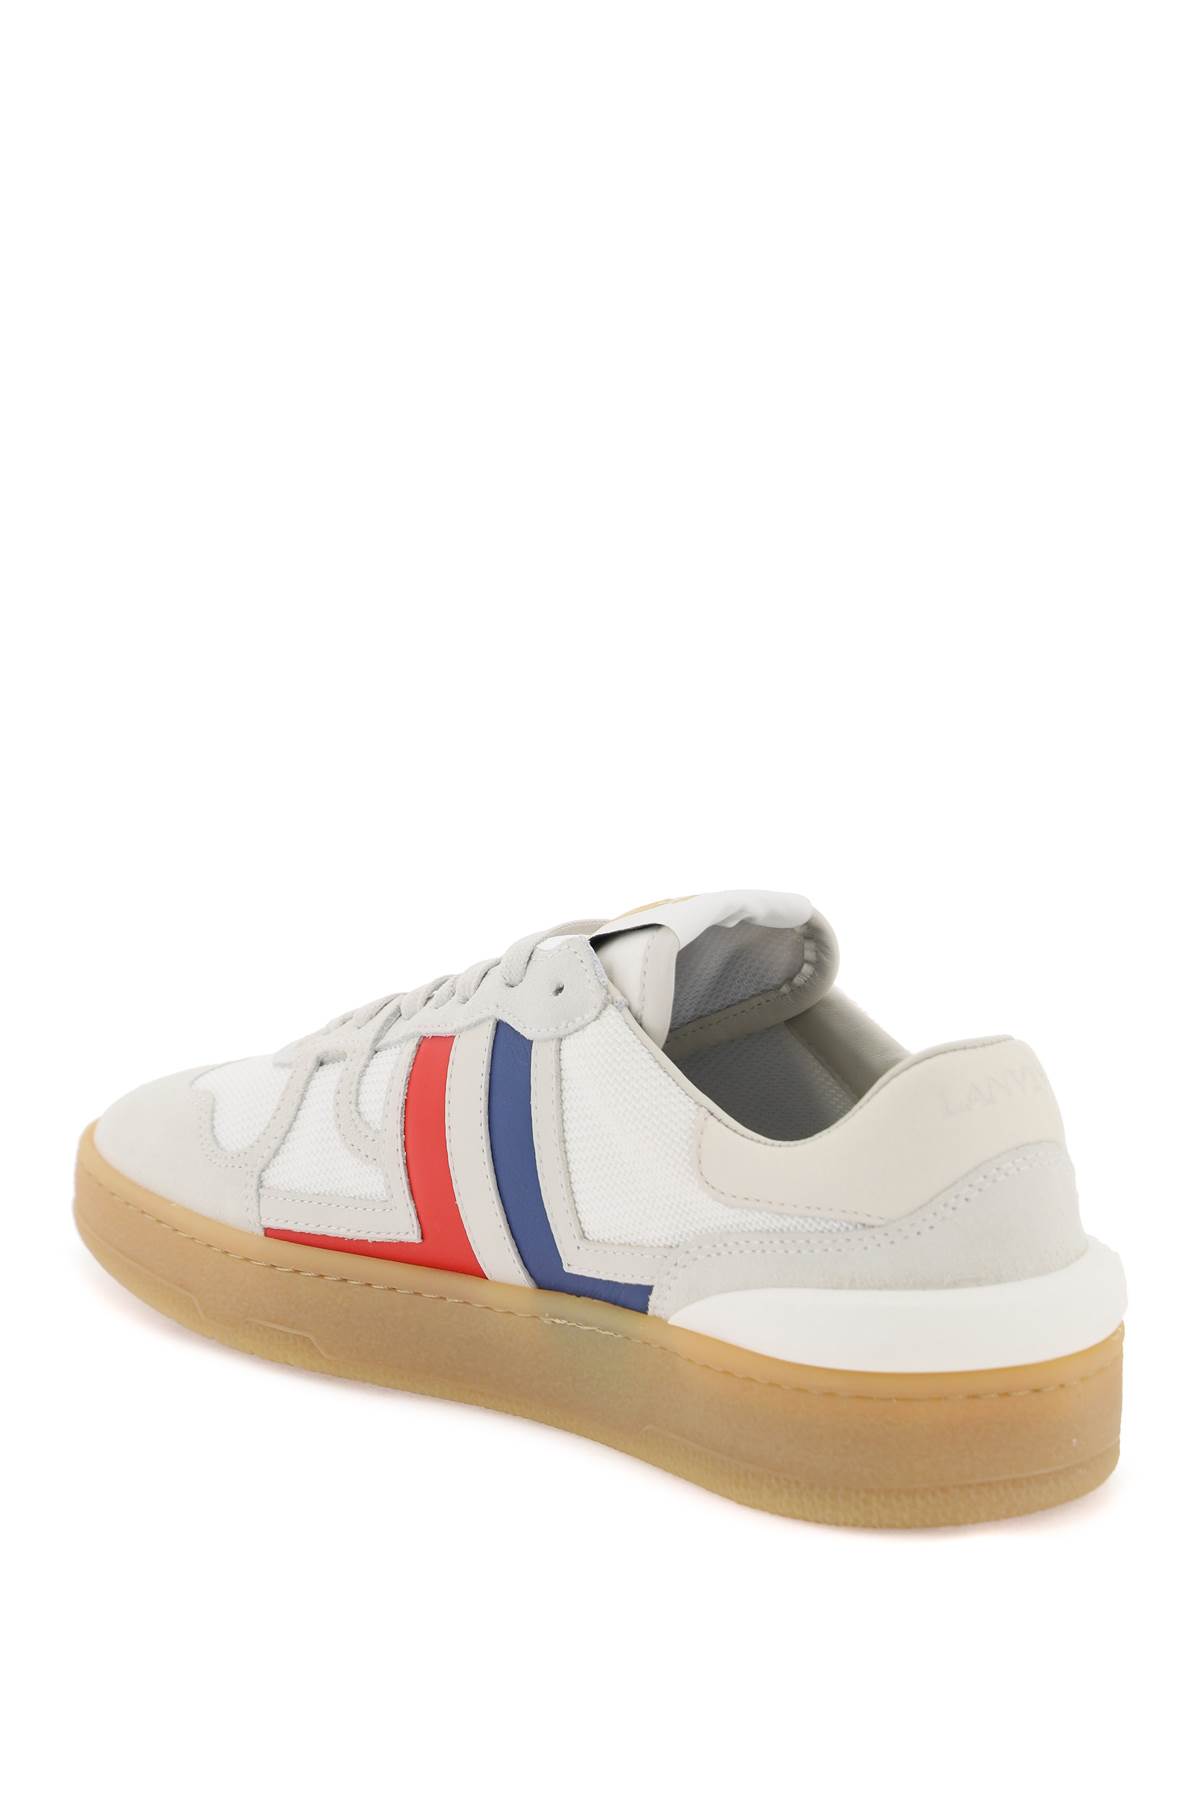 Shop Lanvin Clay Sneakers In White/multicolour